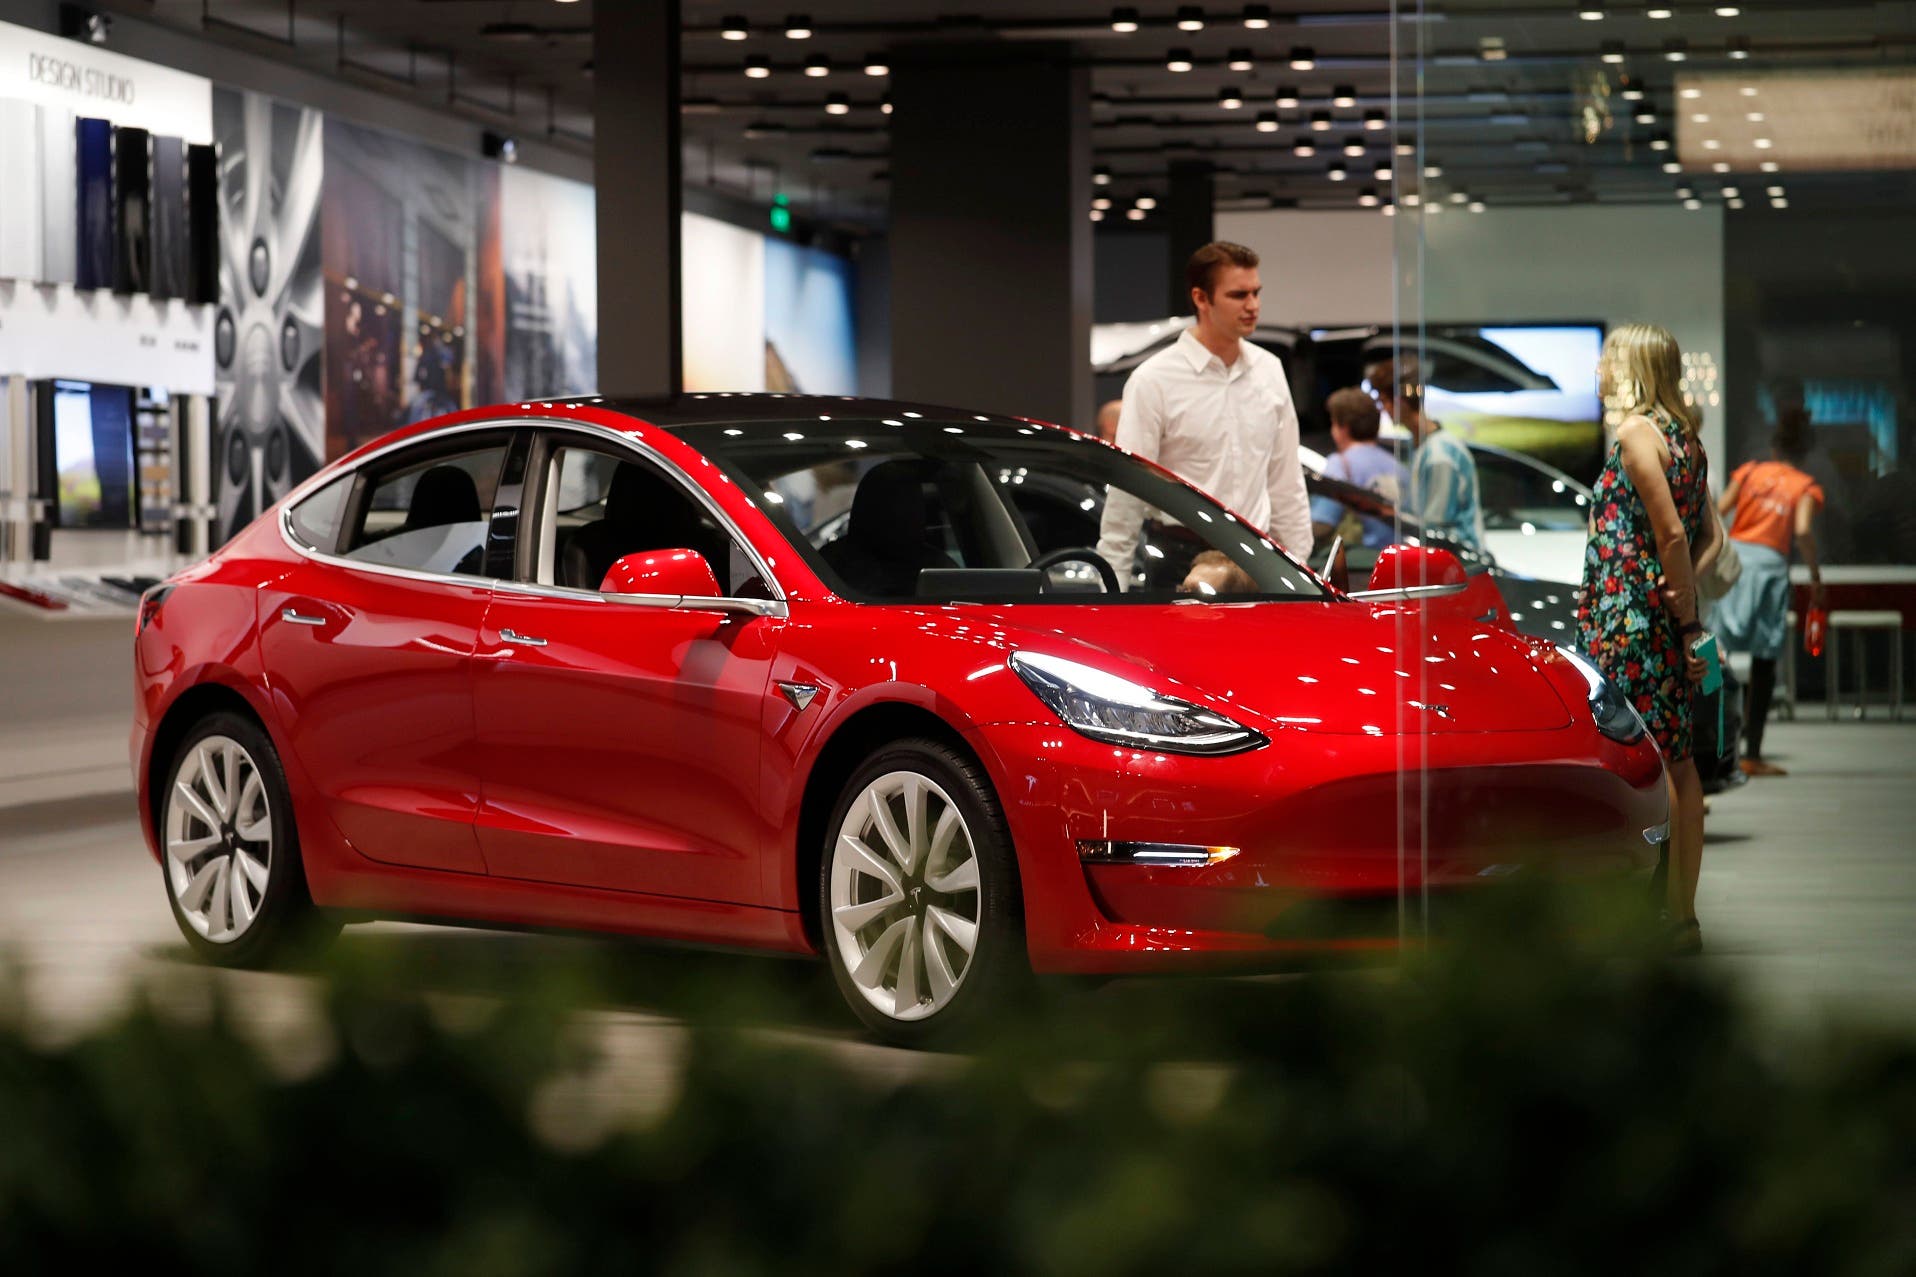 Tesla vende número record de vehículos; baja precio de autos